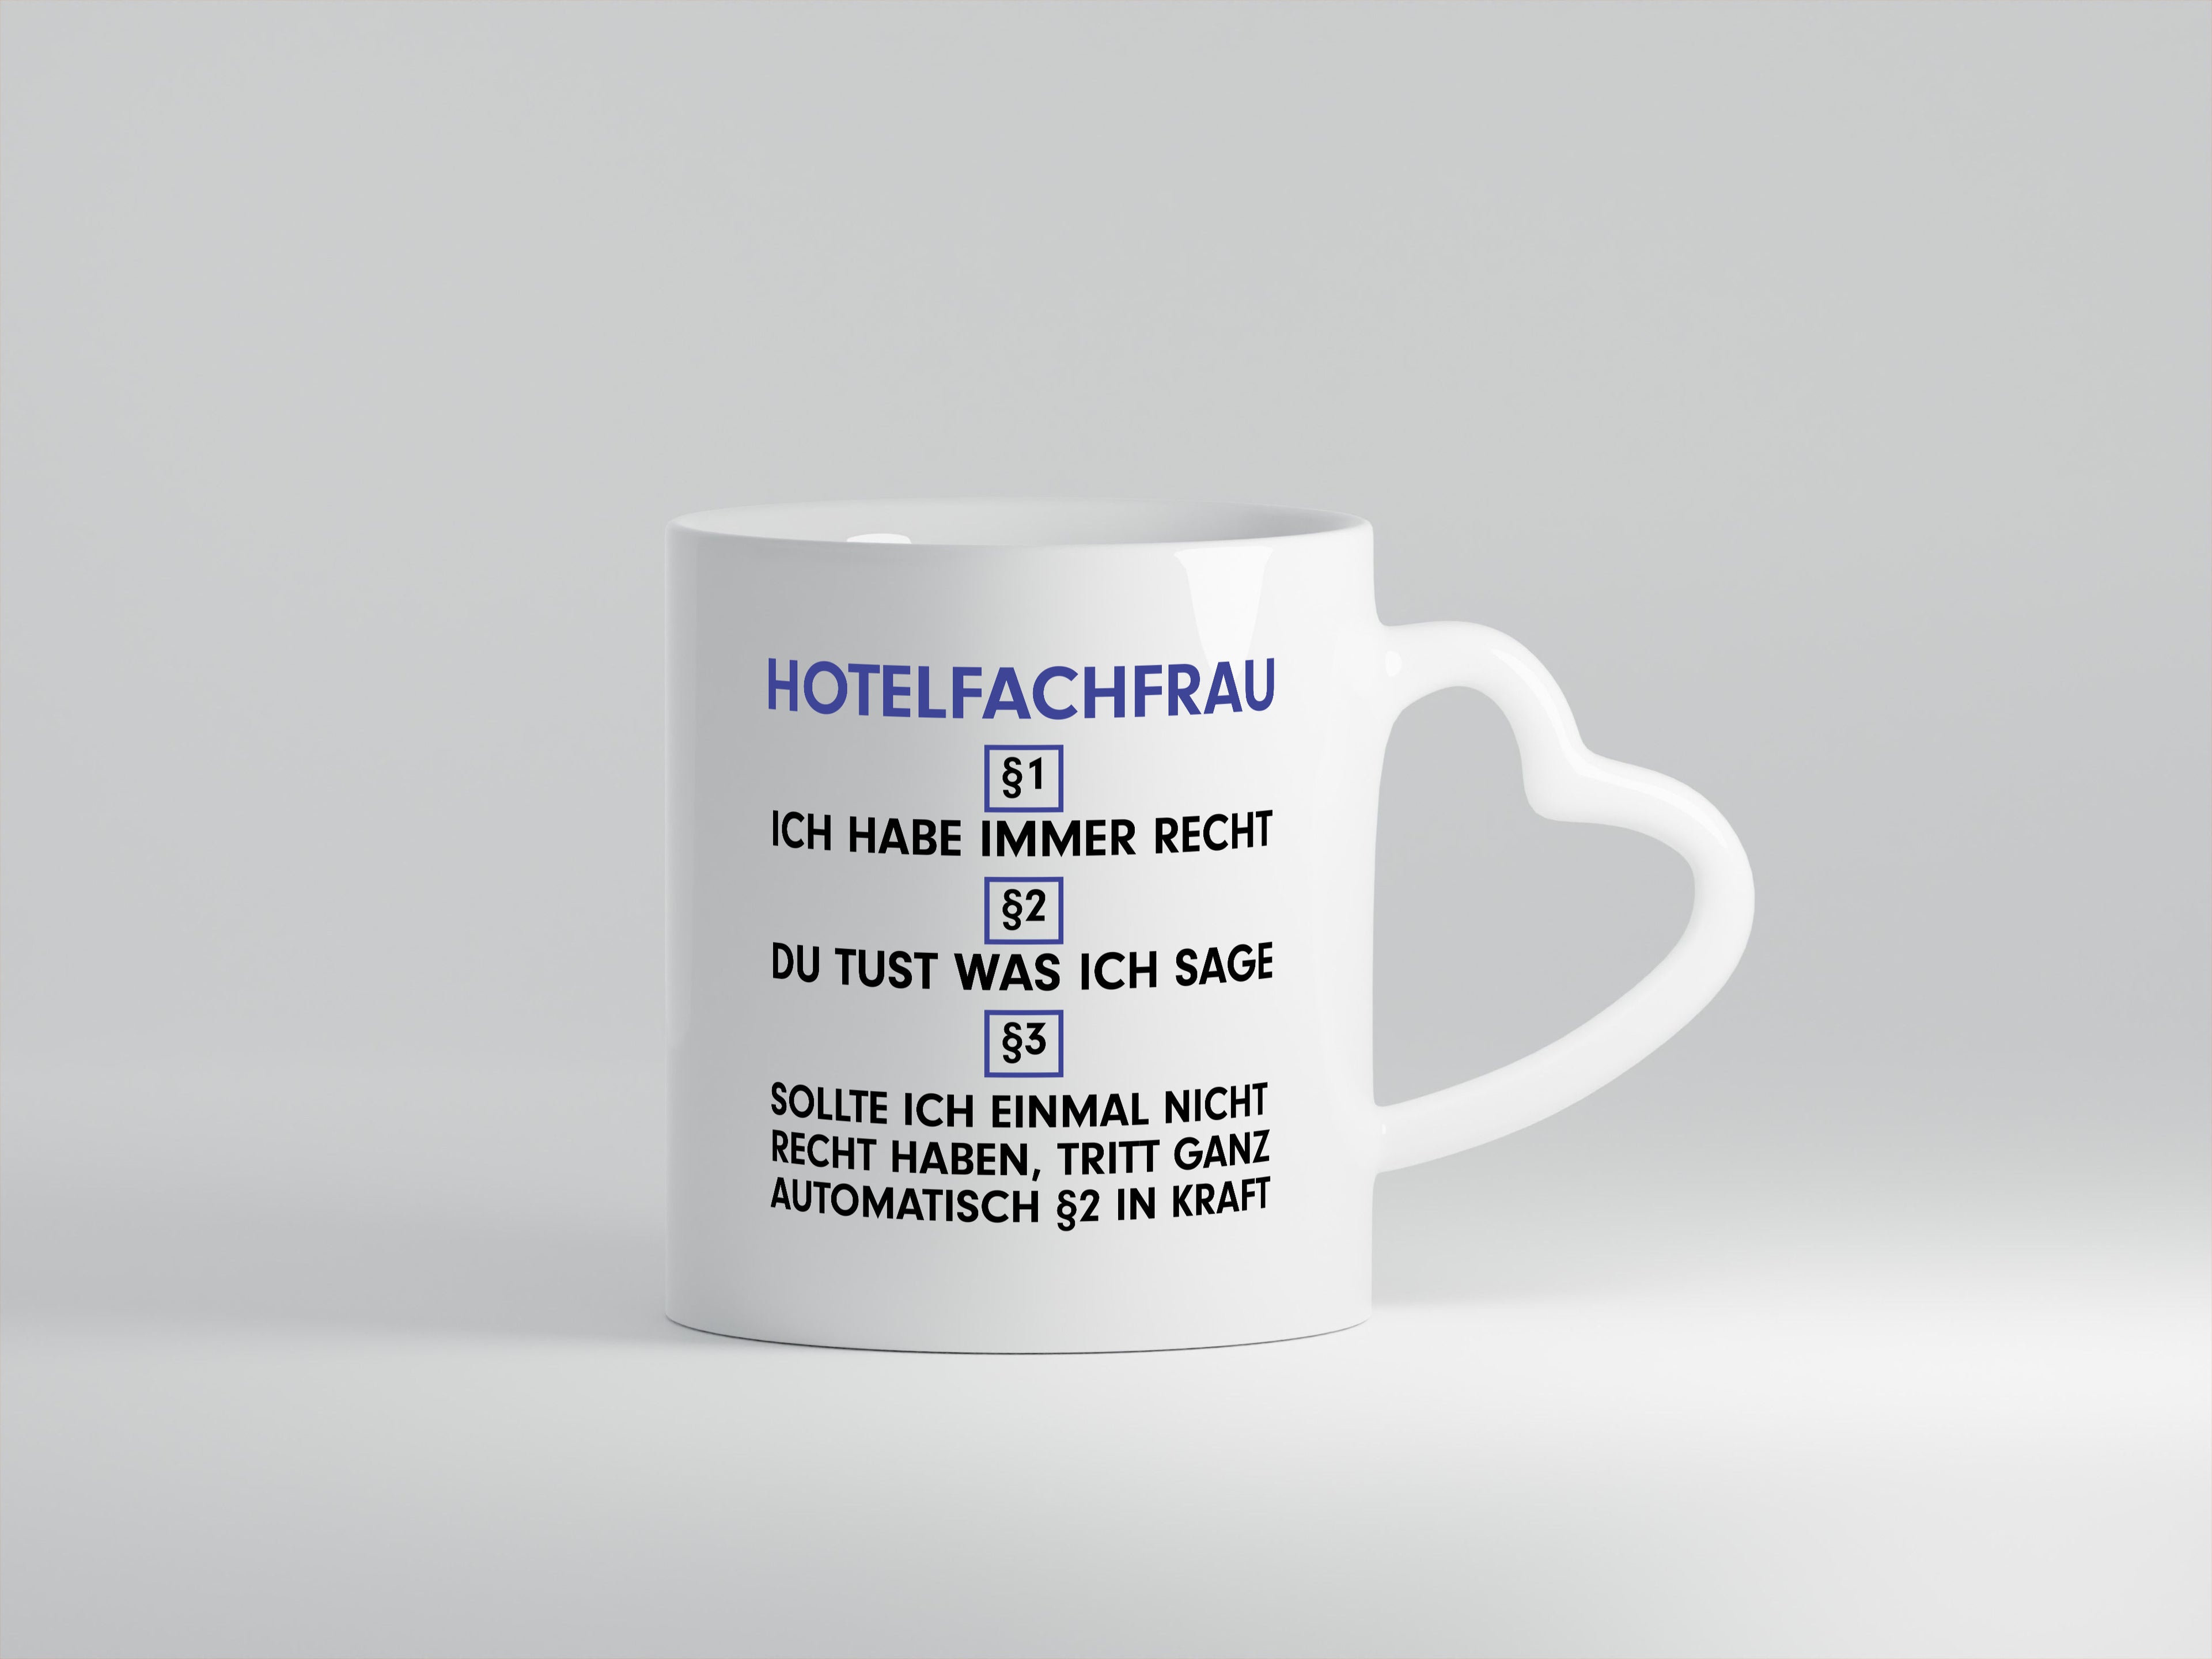 Ich habe immer Recht Hotelfachfrau | Hotel - Herzhenkel Tasse - Kaffeetasse / Geschenk / Familie